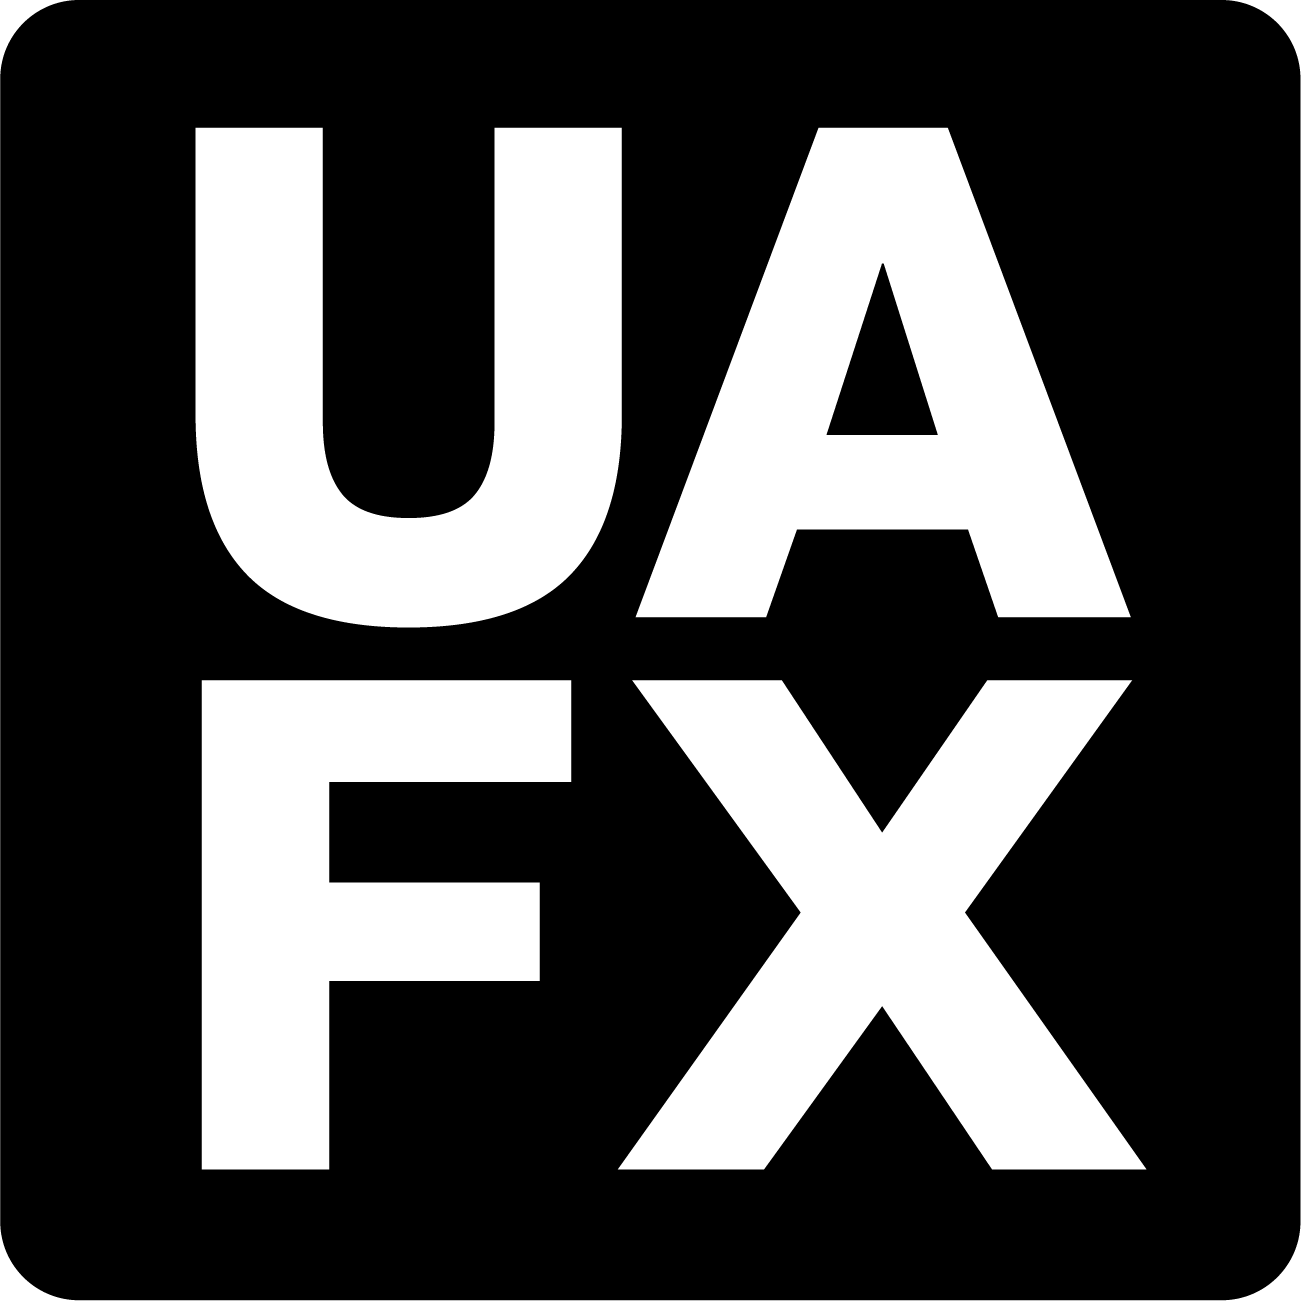 uafx-logo-black.png